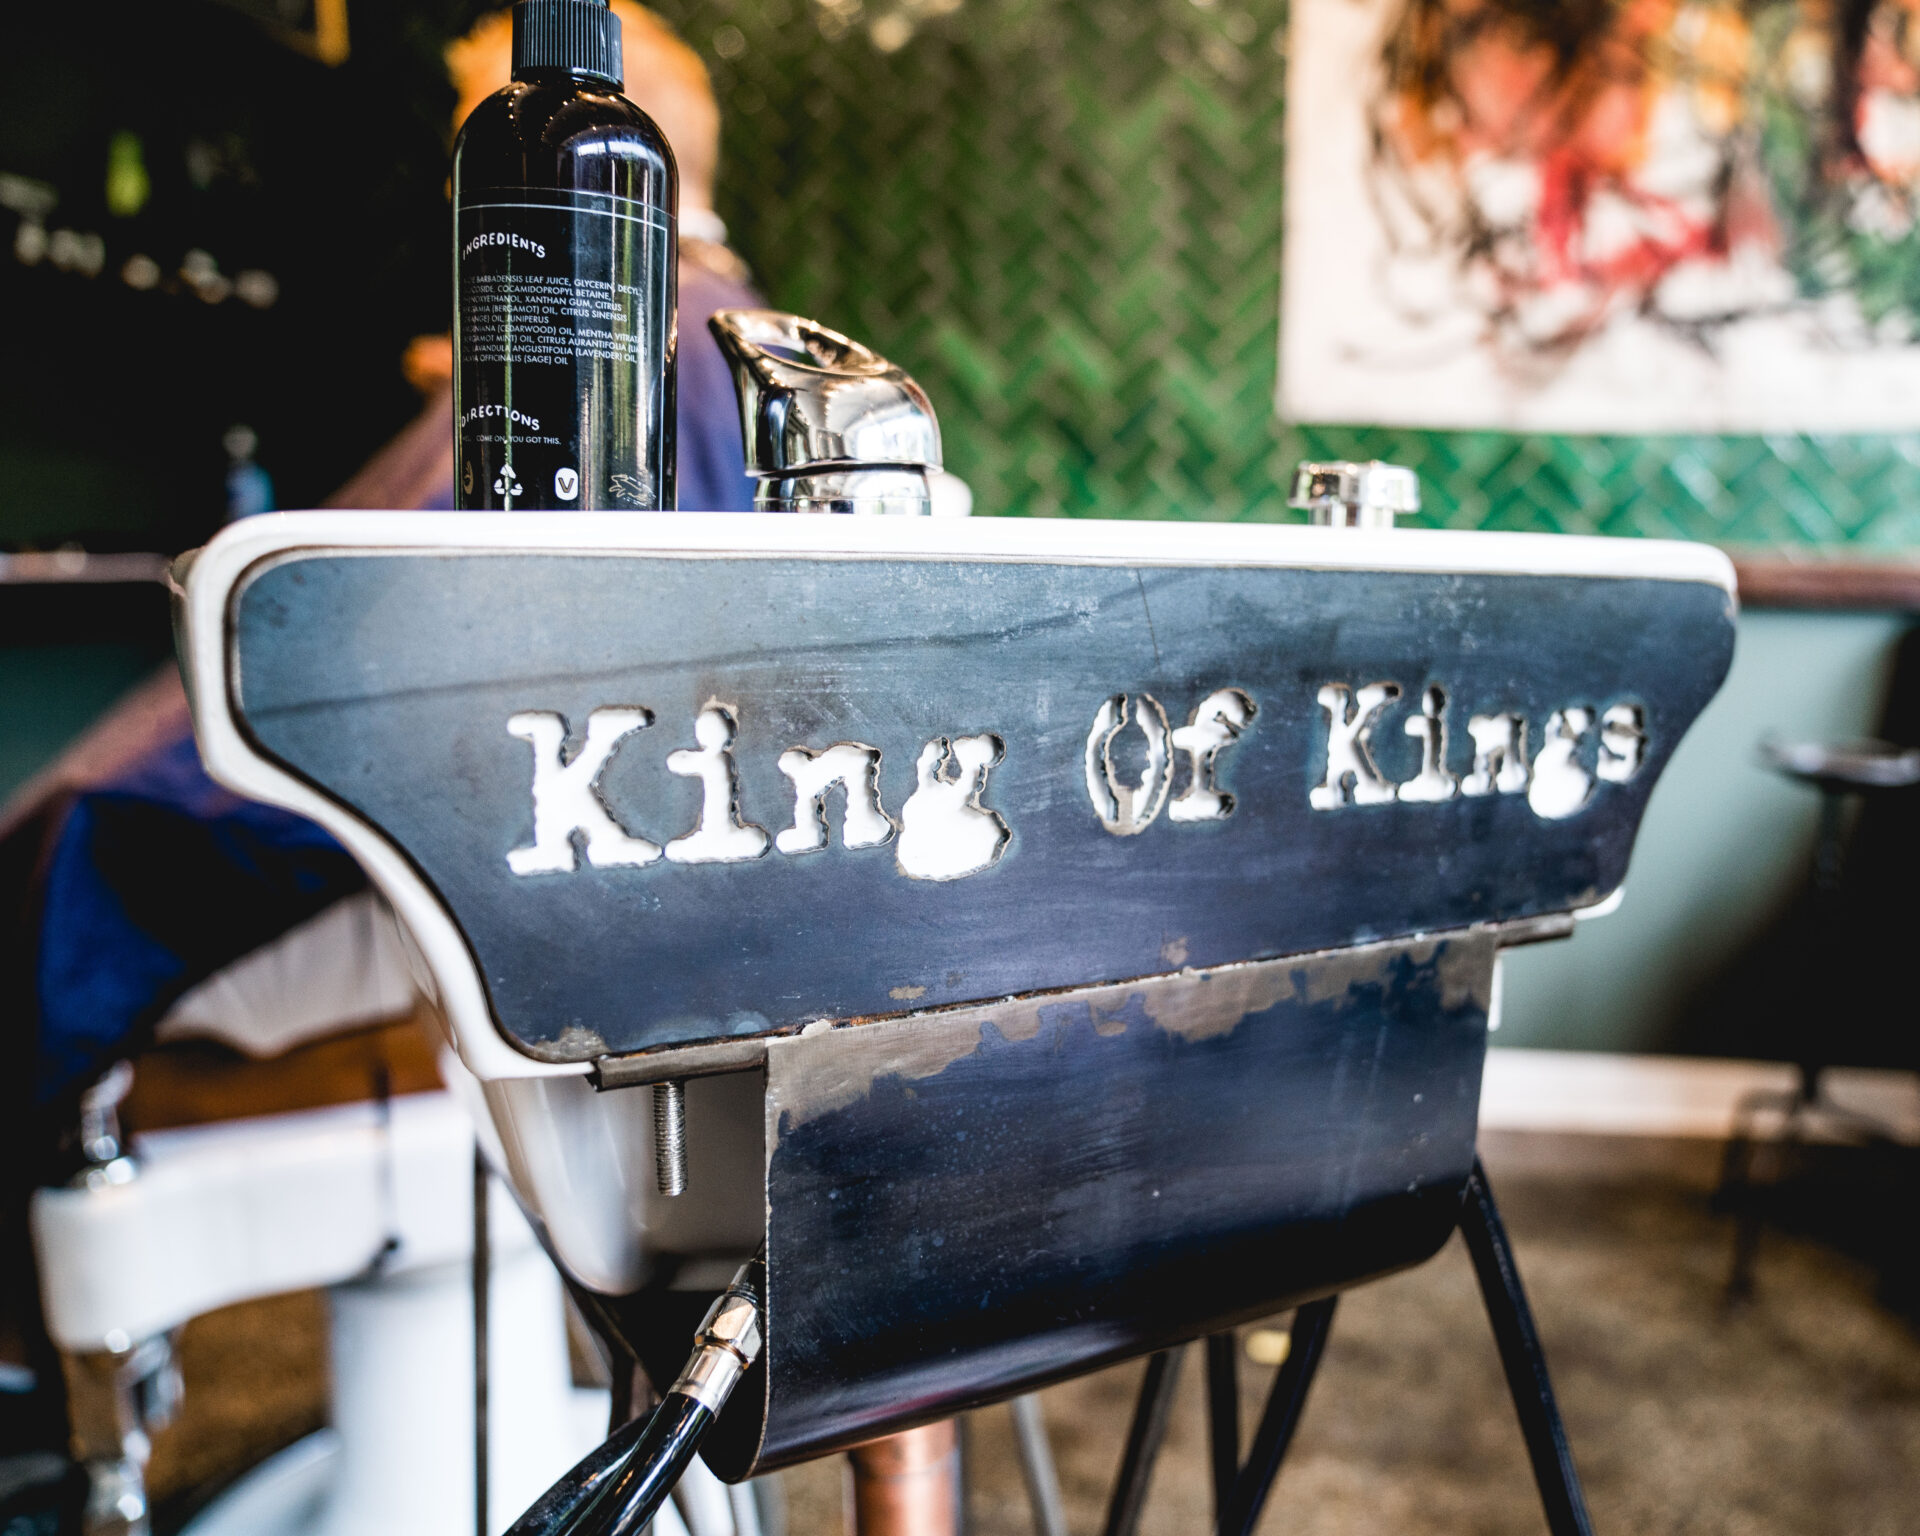 The King of Kings Barbershop.